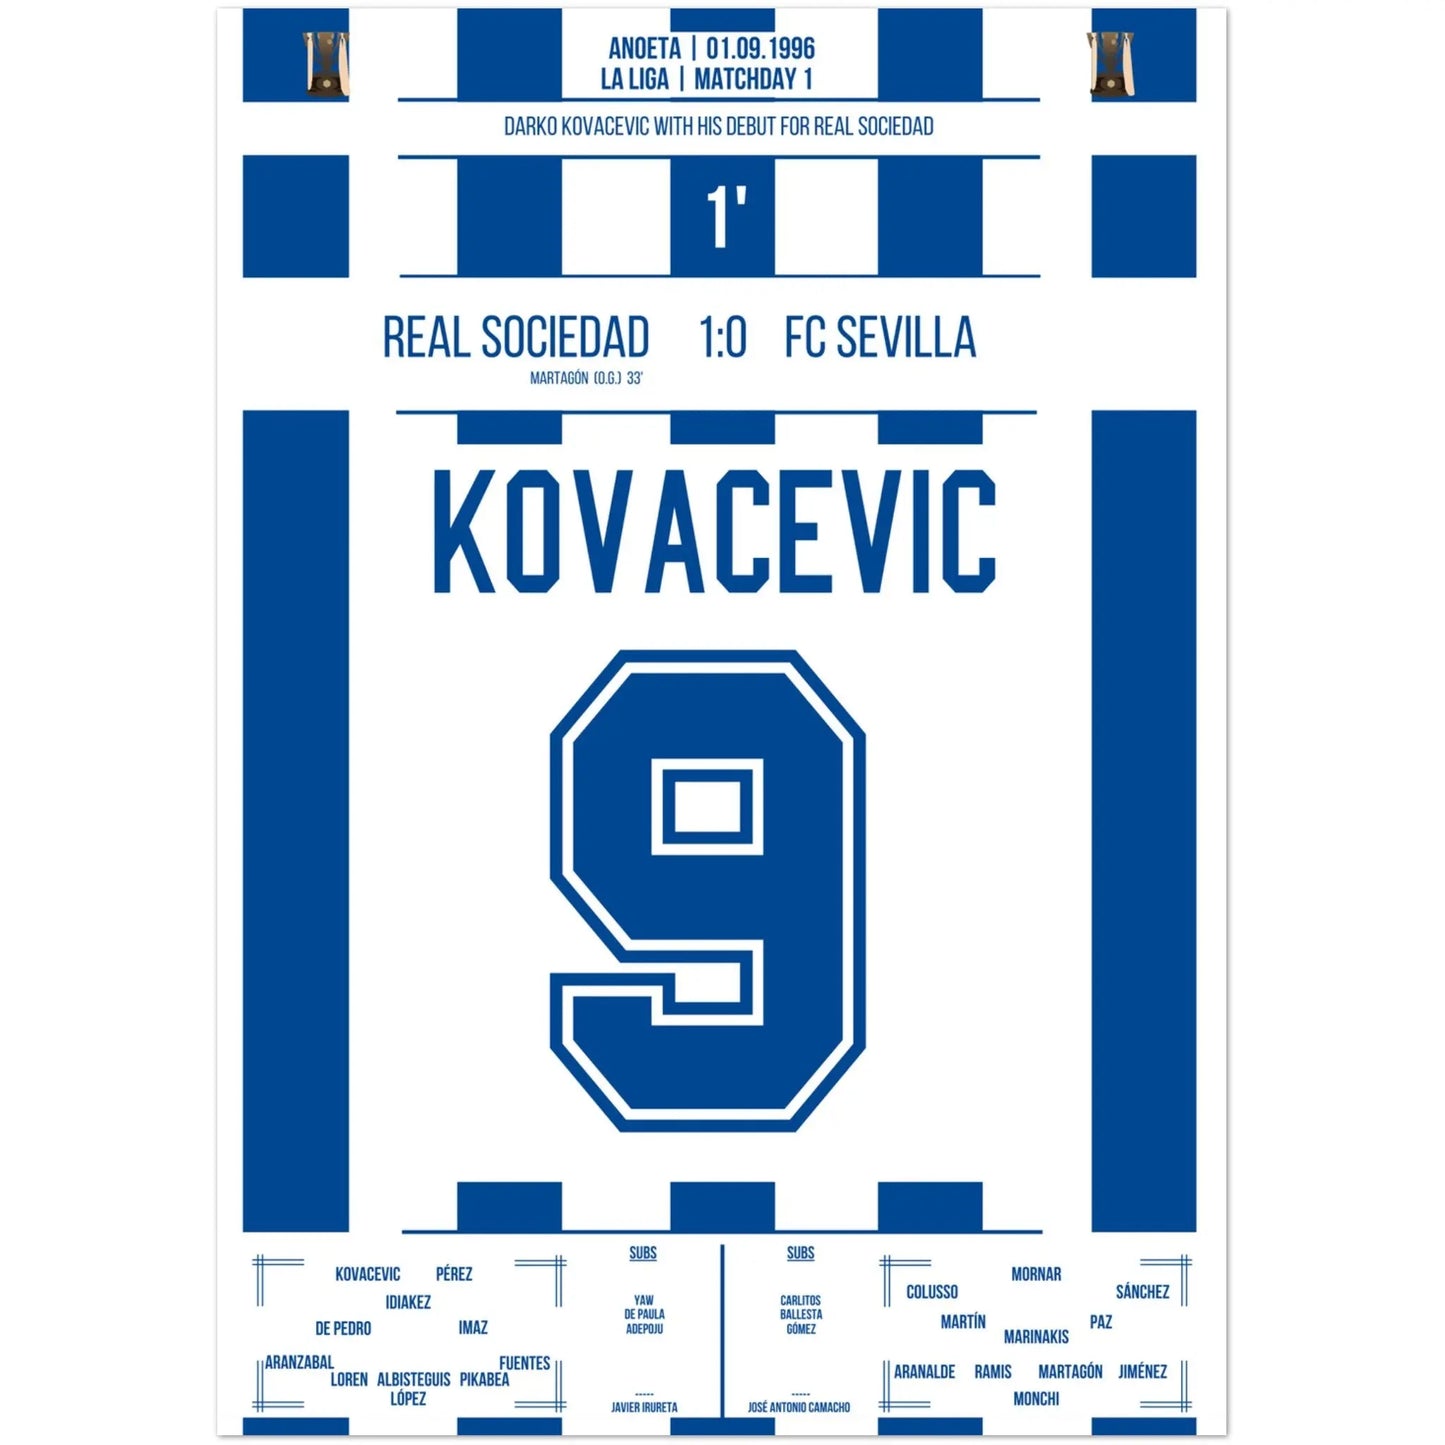 Darko Kovacevic a fait ses débuts avec la Real Sociedad en 1996